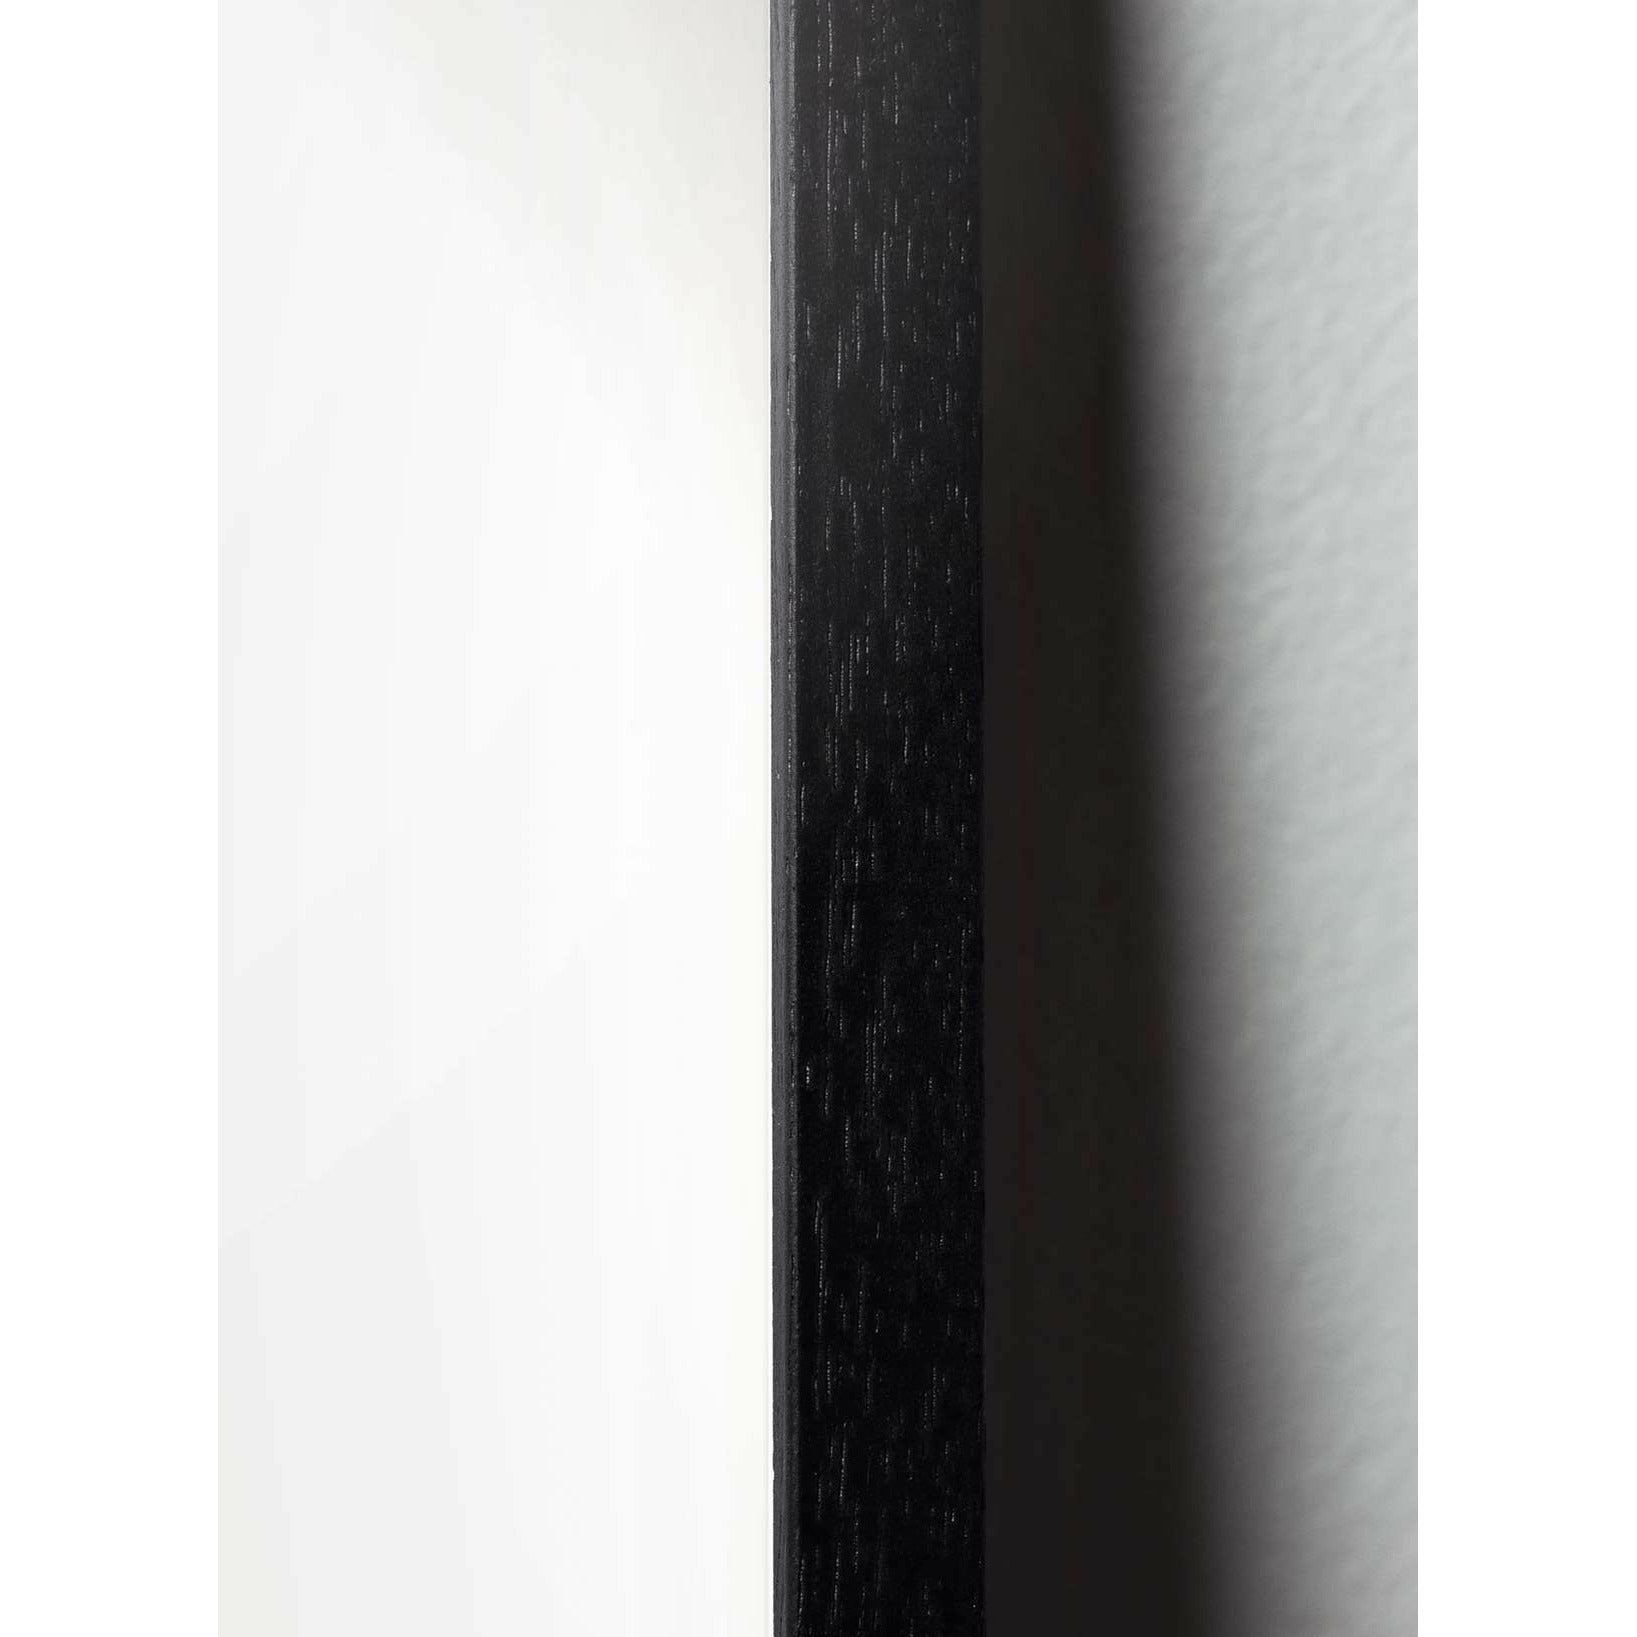 Poster di linea cigno da frutto, cornice in legno laccato nero 70 x100 cm, sfondo bianco